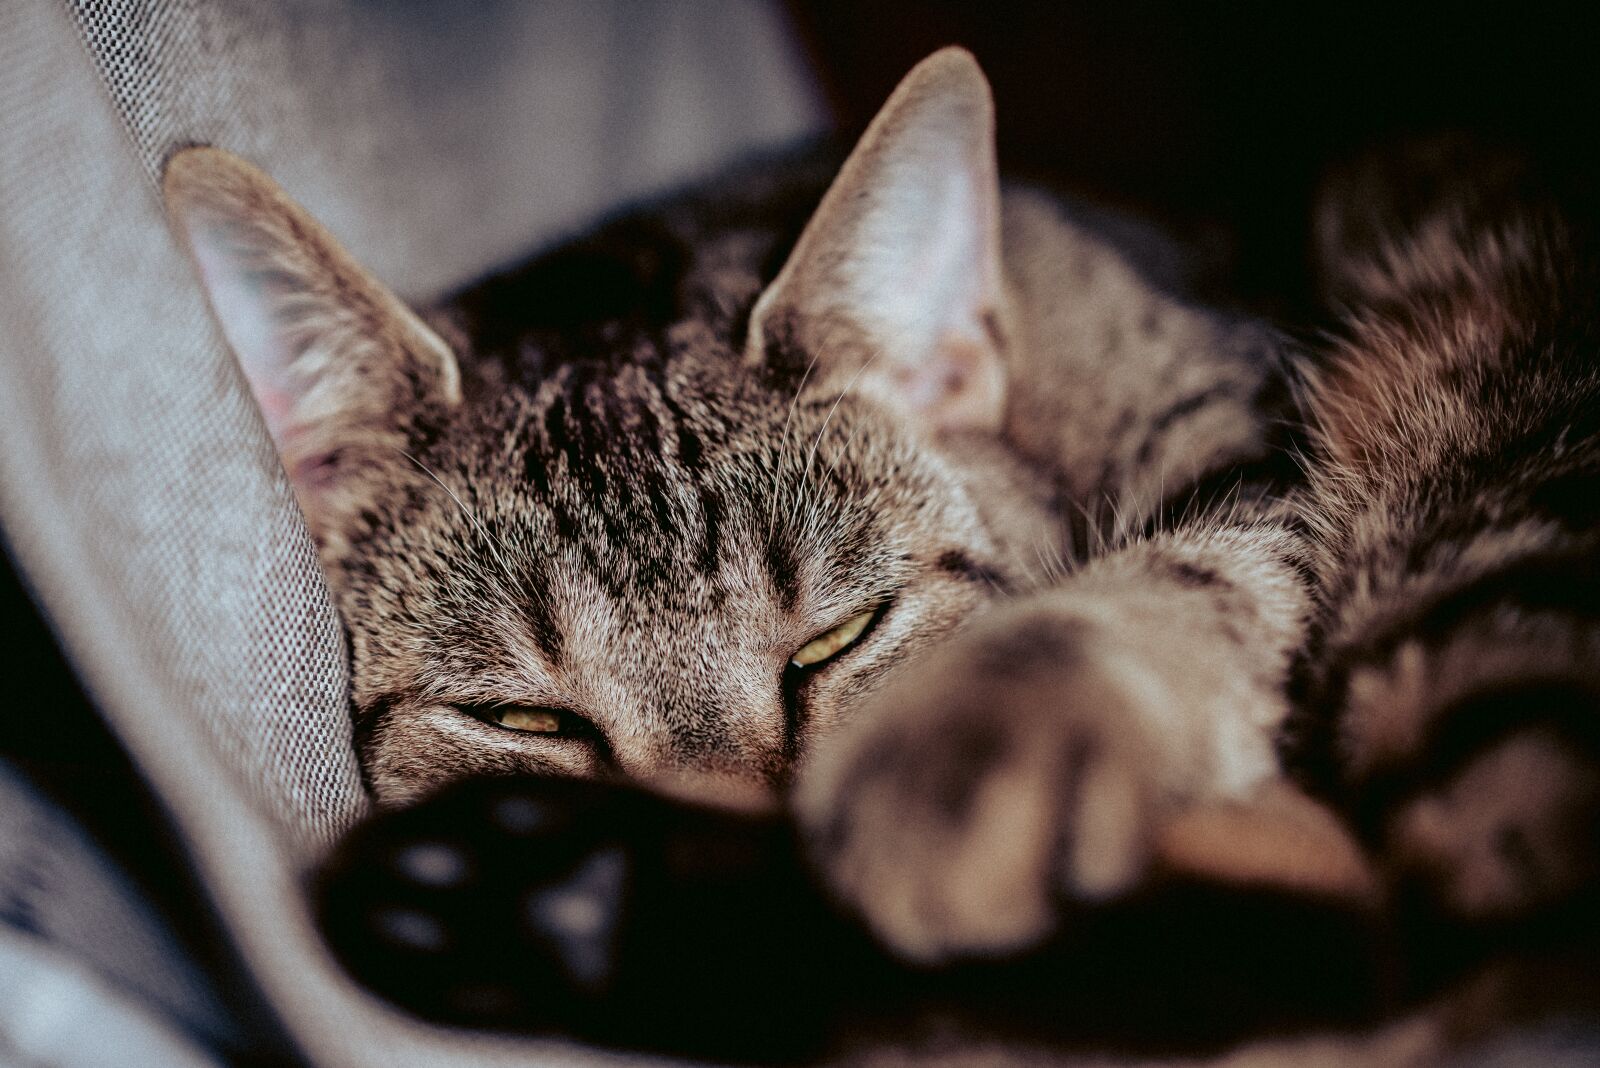 Nikon D800 sample photo. Cat, cat's eyes, pet photography